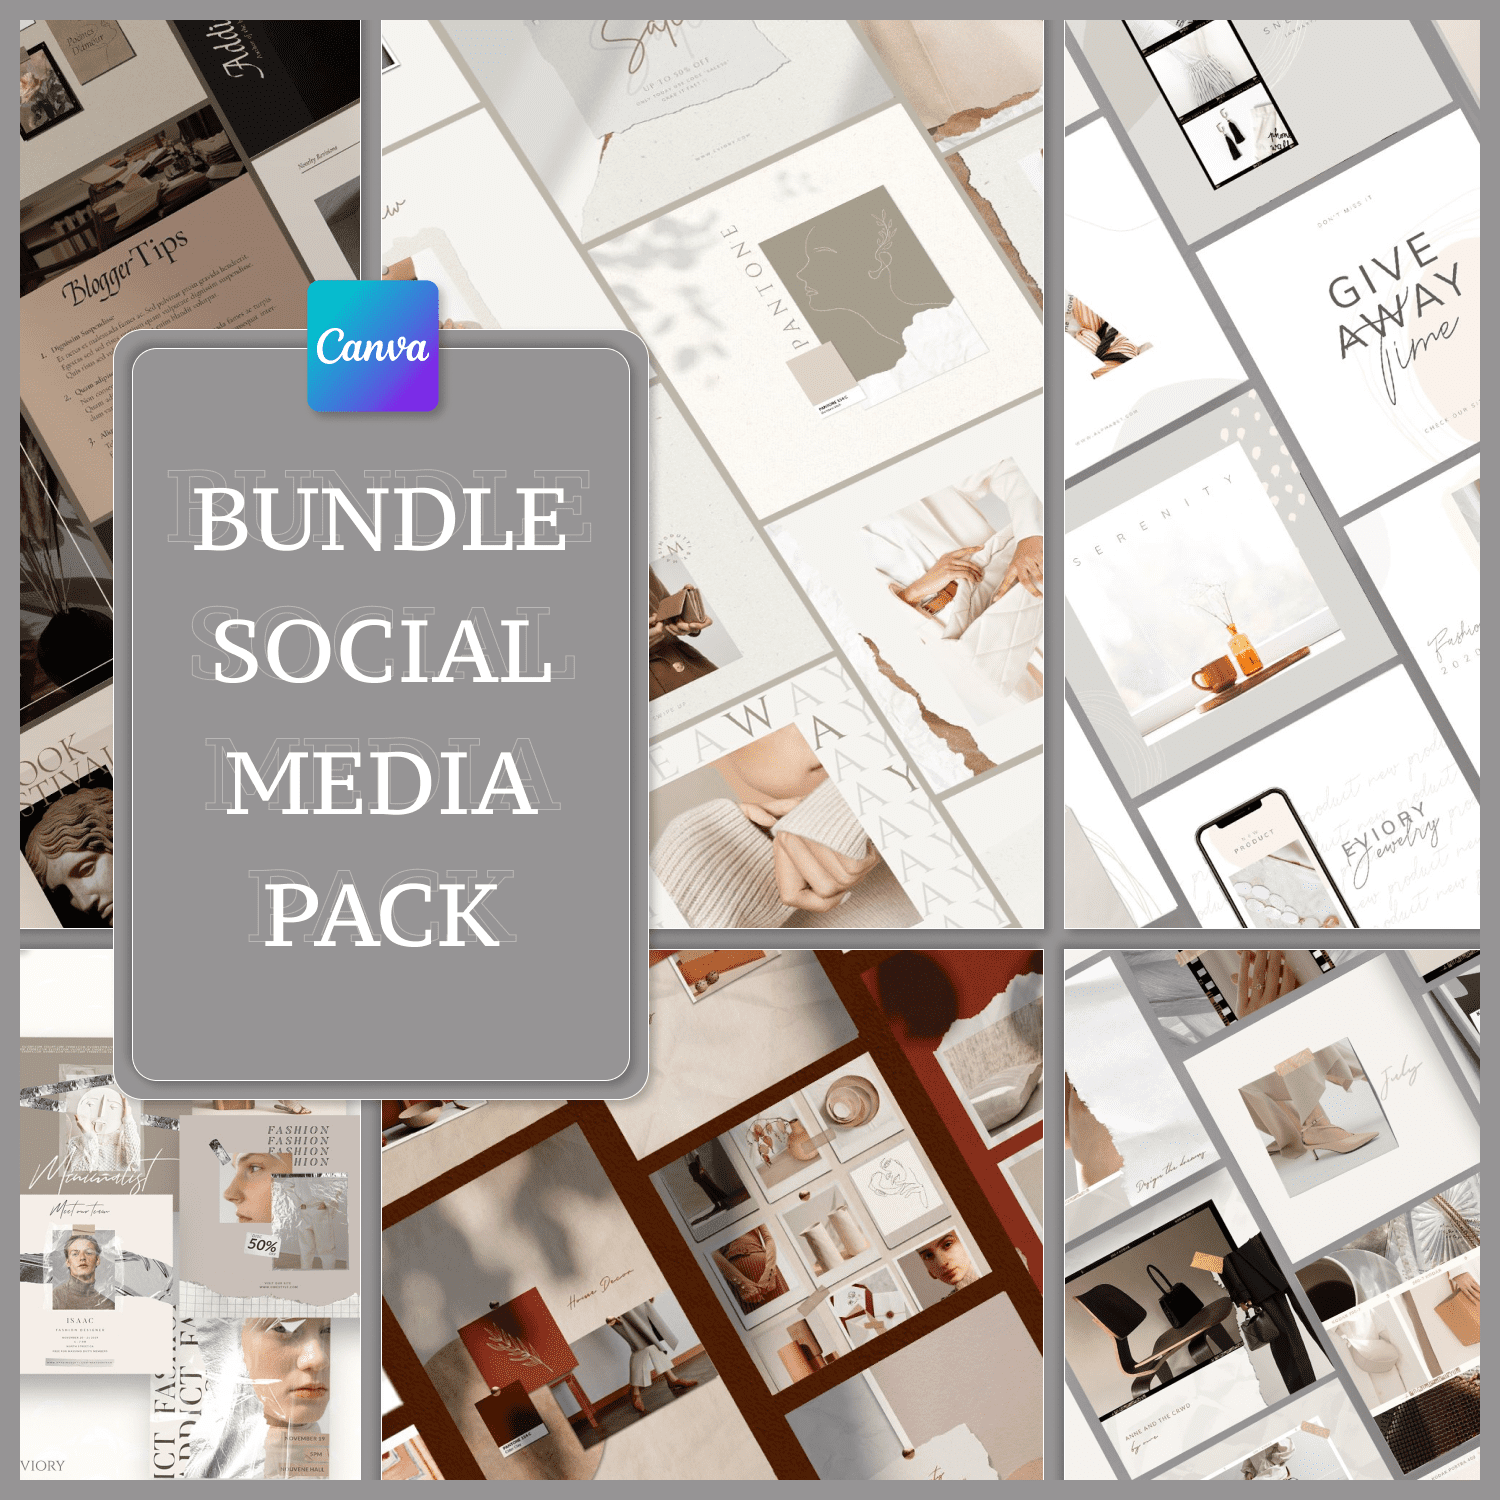 CANVA Bundle Social Media Pack.